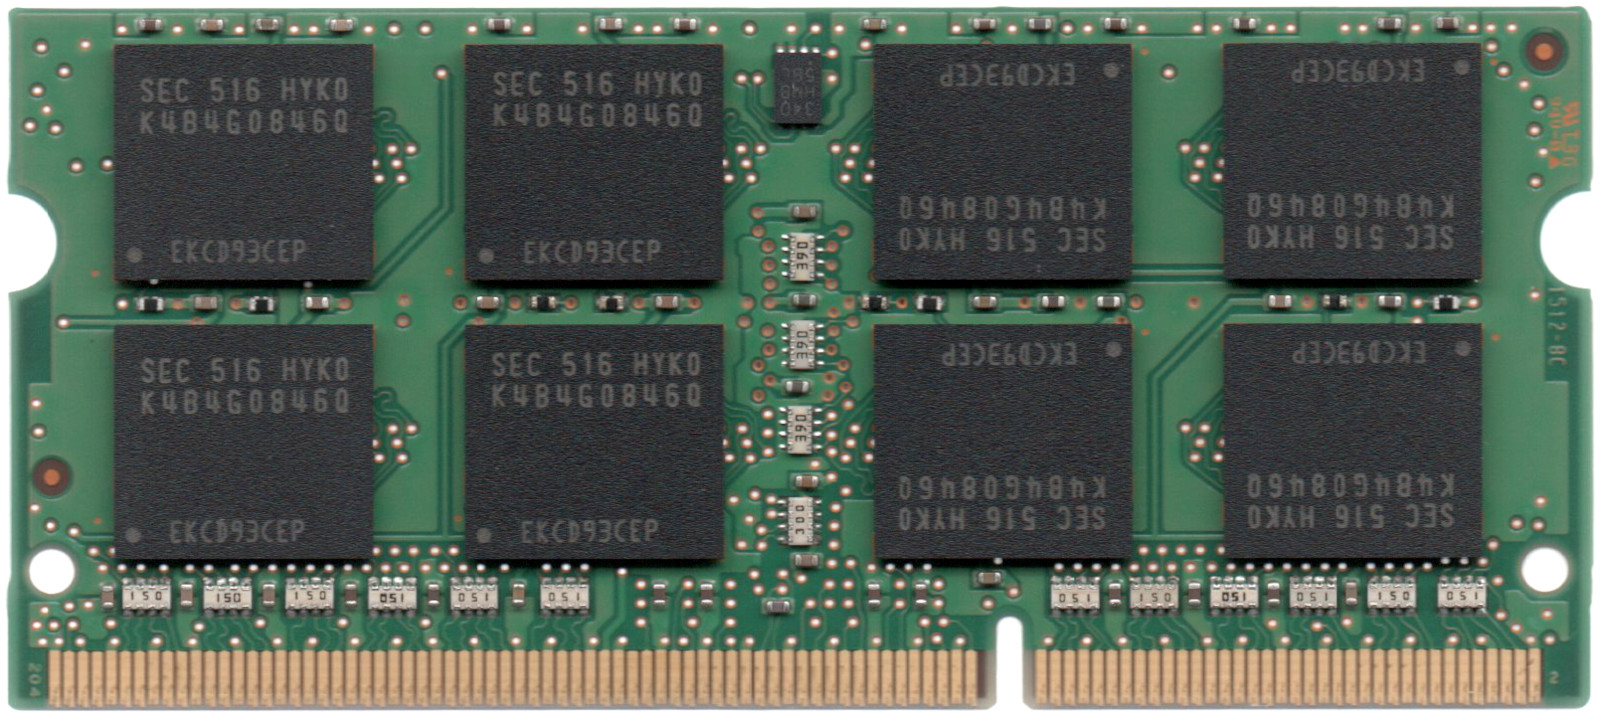 市場】【ポイント2倍】SAMSUNG 低電圧メモリ (1.35V) PC3L-12800S (DDR3L-1600) 8GB SO-DIMM  204pin ノートパソコン用メモリ 型番：M471B1G73QH0-YK0 両面実装 (2Rx8) 動作保証品【中古】 : 電子部品商会